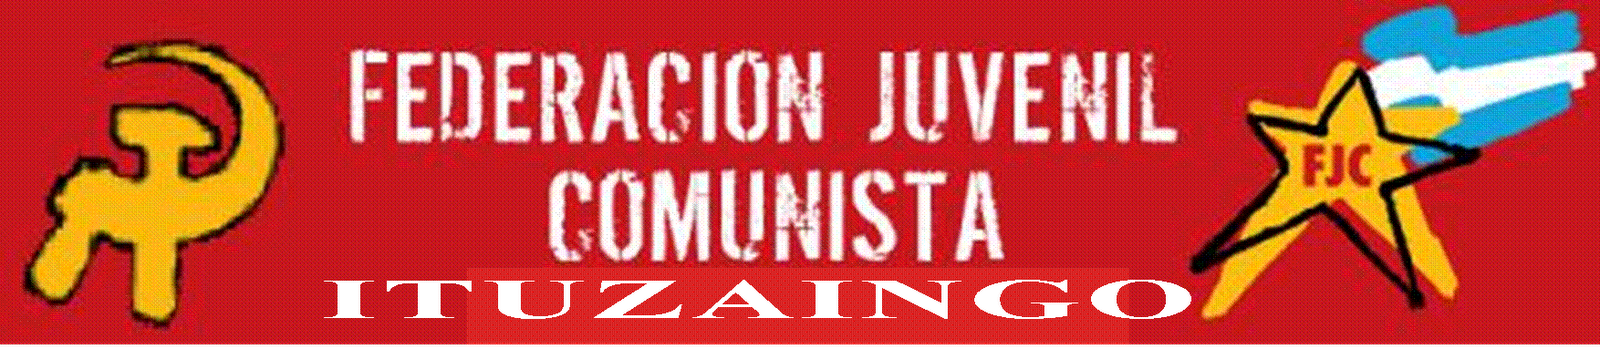 Federación Juvenil Comunista Ituzaingó